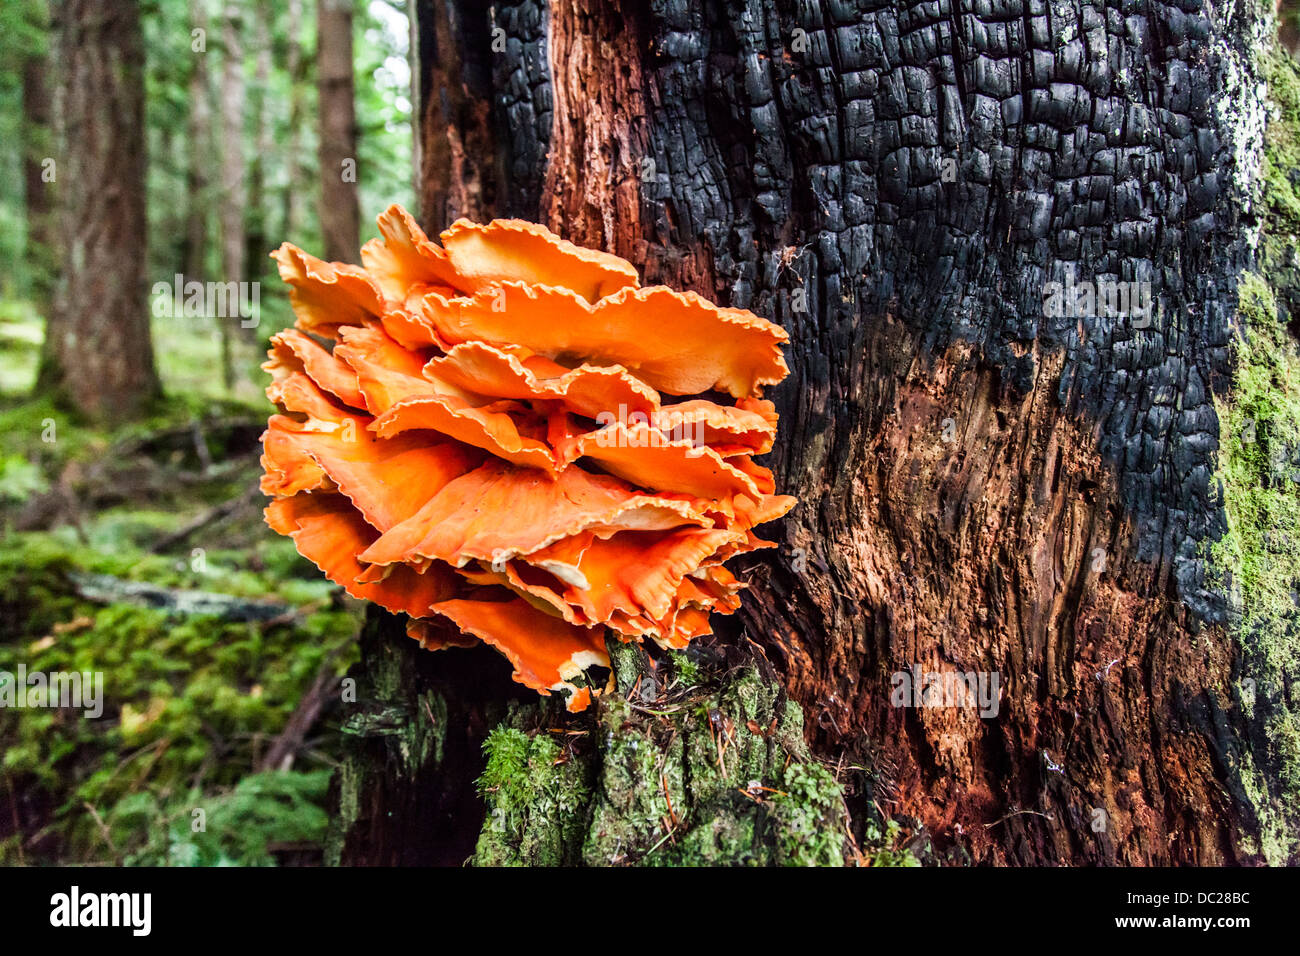 Bright Orange Fungus On Tree Stock Photos Bright Orange Fungus On | My ...